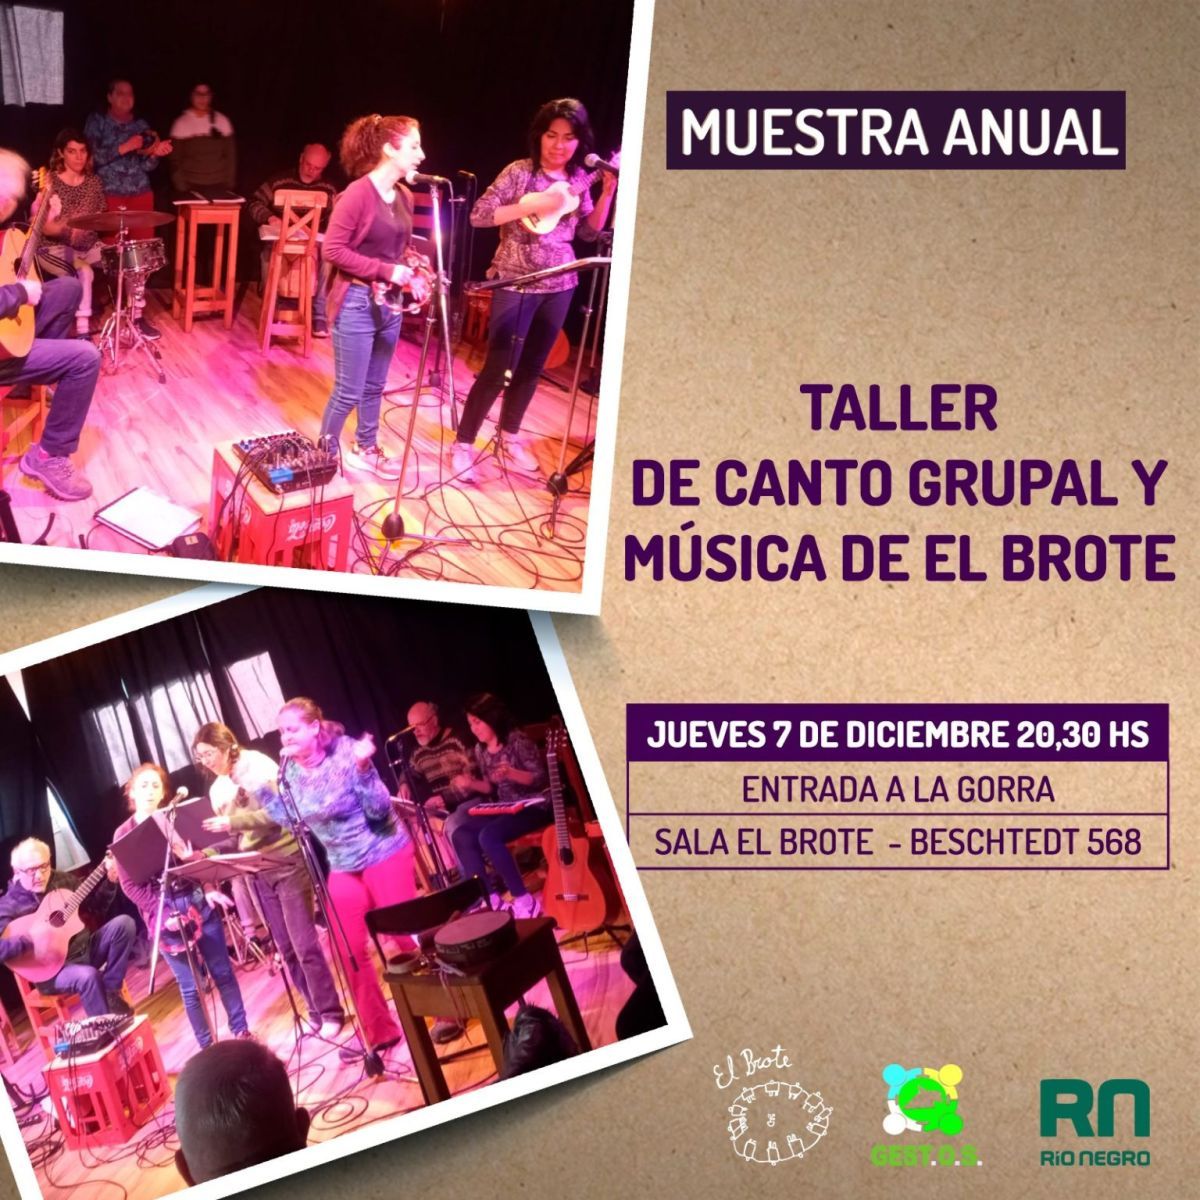 Taller de Canto Grupal y Musical de El Brote